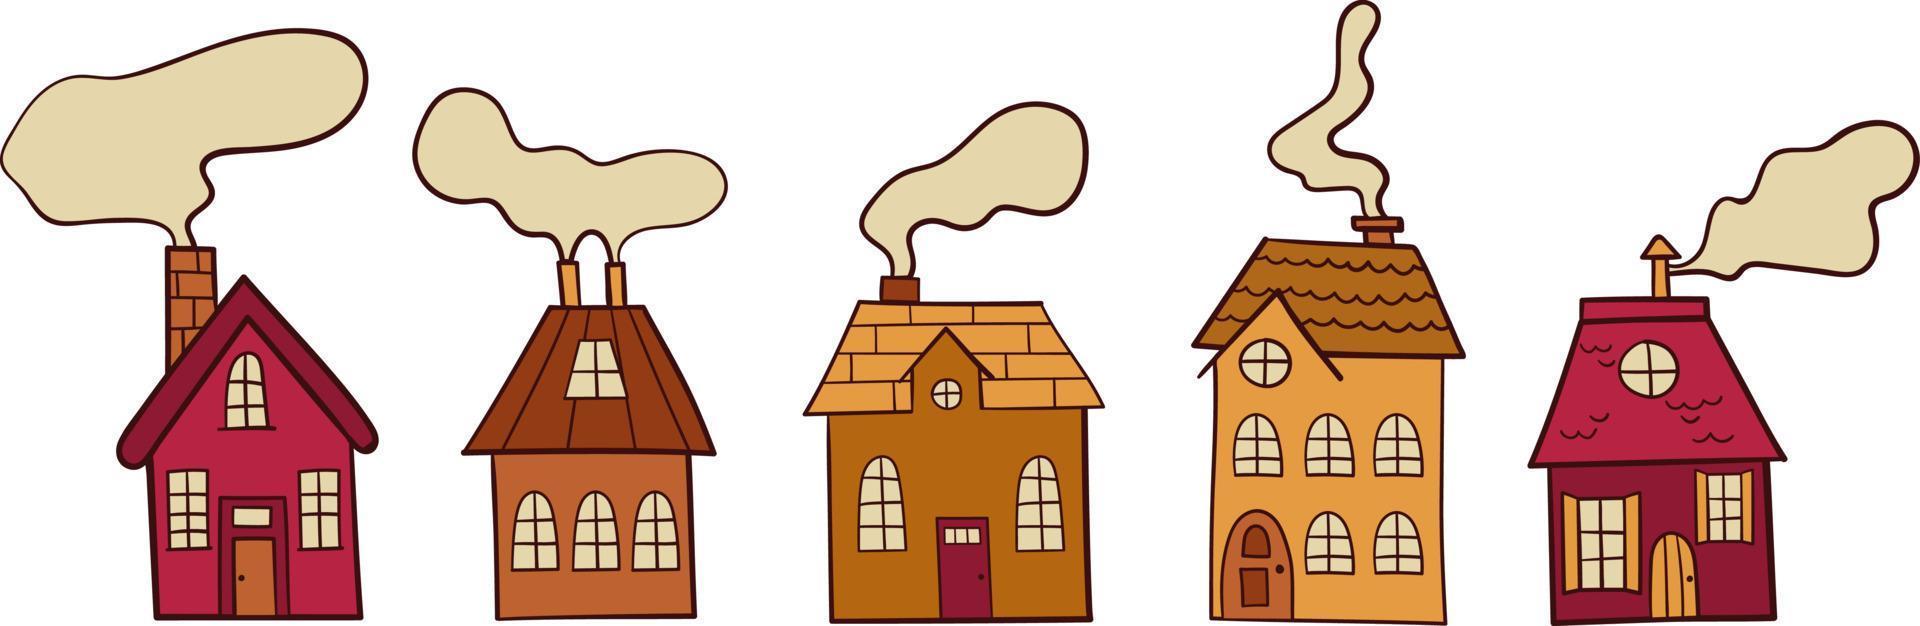 maisons de vecteur avec de la fumée de cheminées. dessin à main levée. conception plate